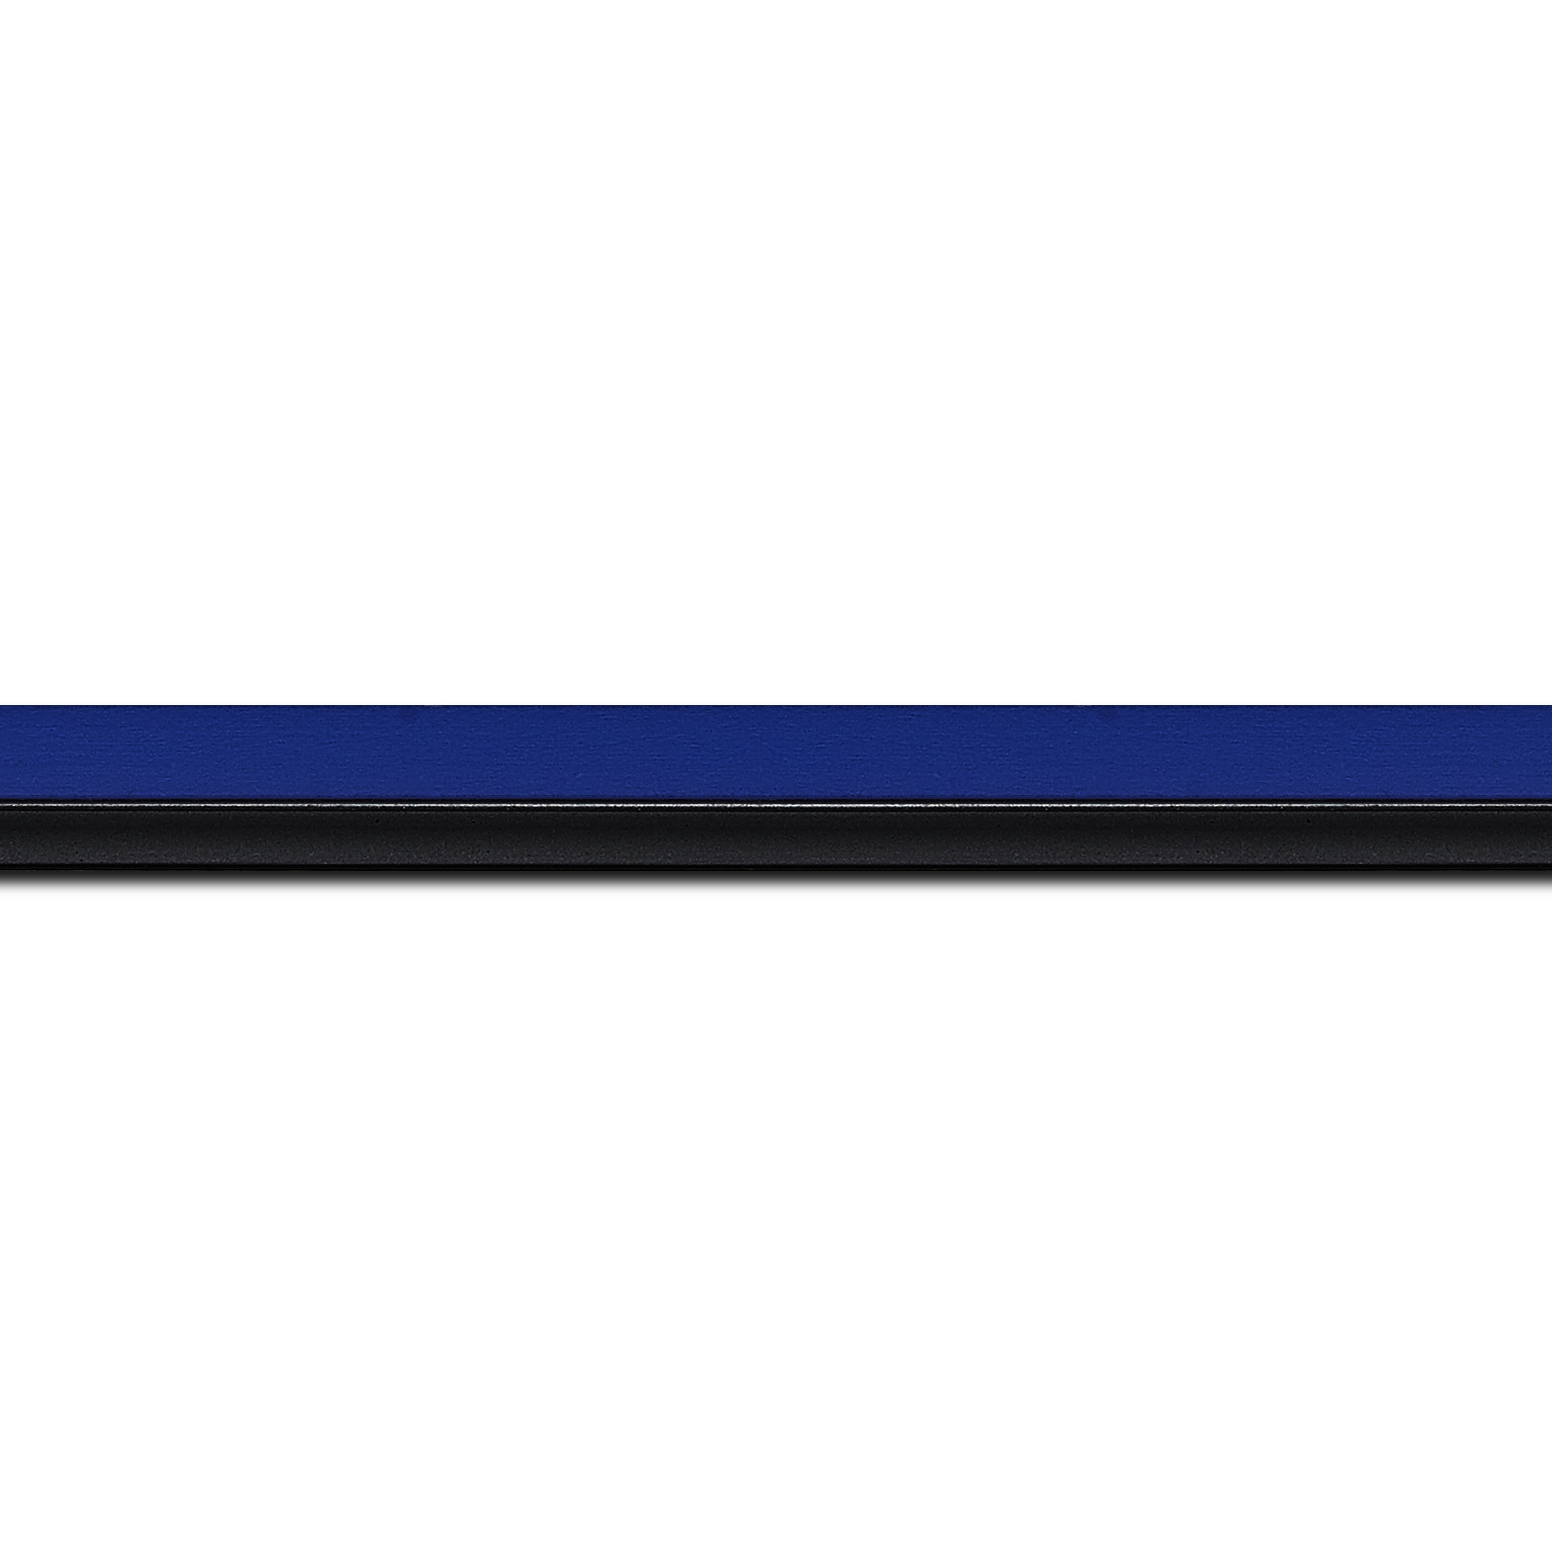 Pack par 12m, bois profil plat largeur 1.6cm couleur bleu franc filet noir en retrait de la face du cadre de 6mm assurant un effet très original (longueur baguette pouvant varier entre 2.40m et 3m selon arrivage des bois)